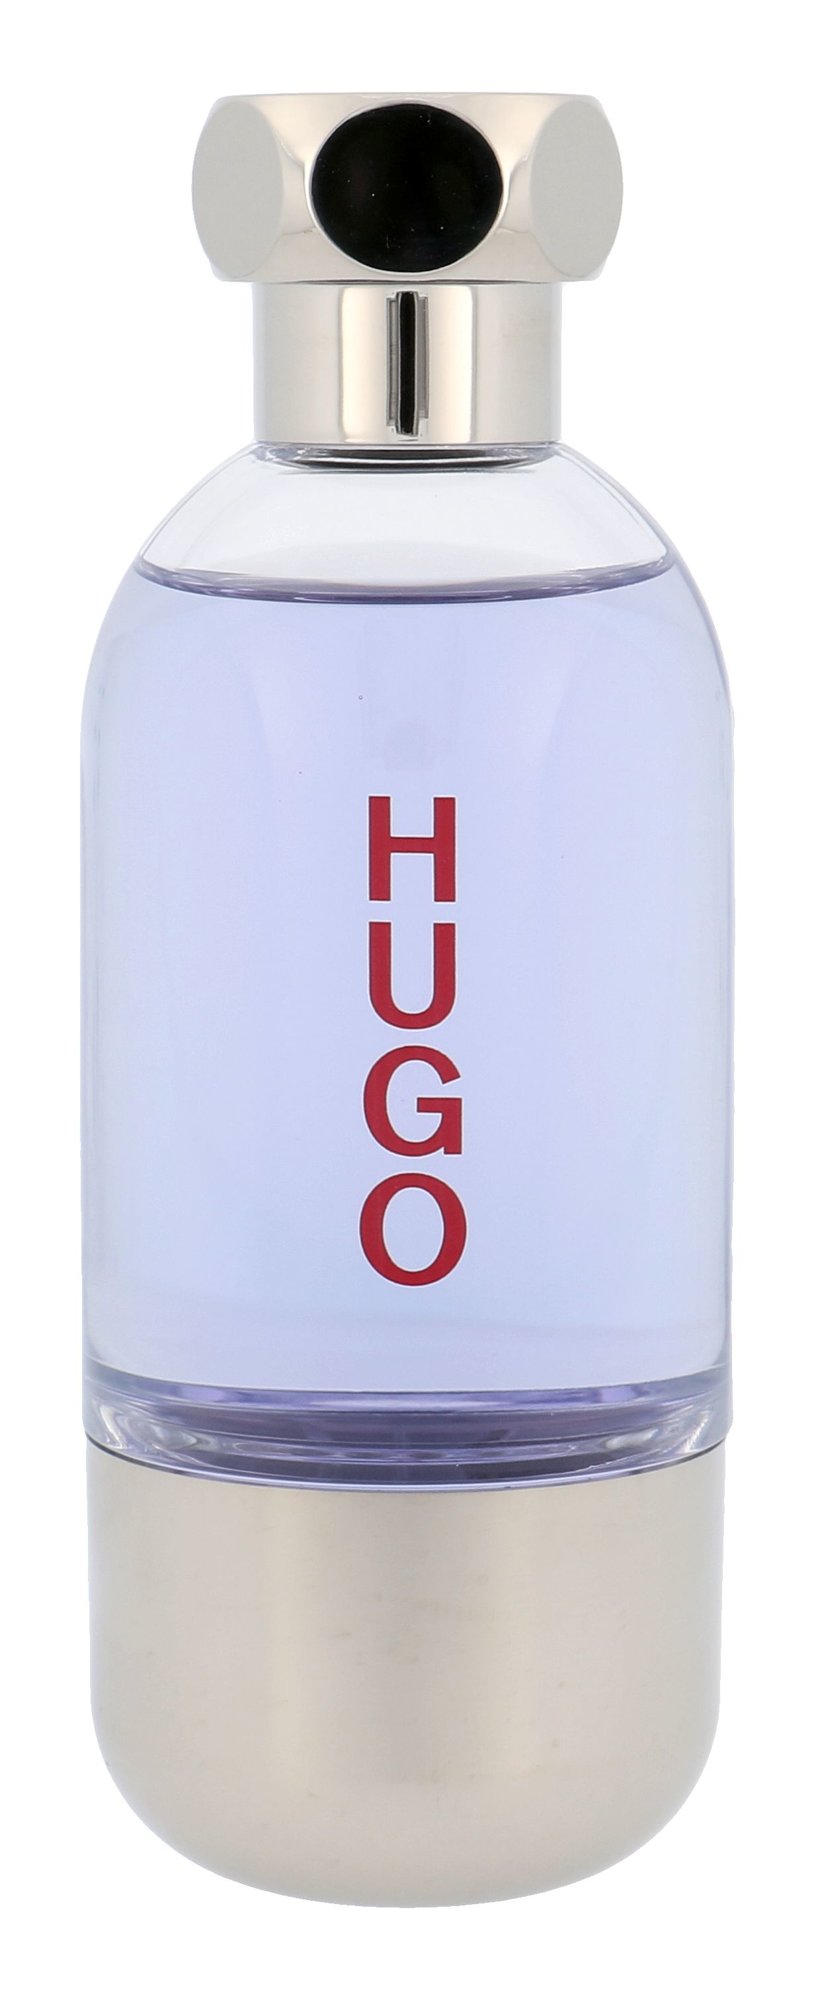 Hugo Boss Hugo Element 90ml vanduo po skutimosi